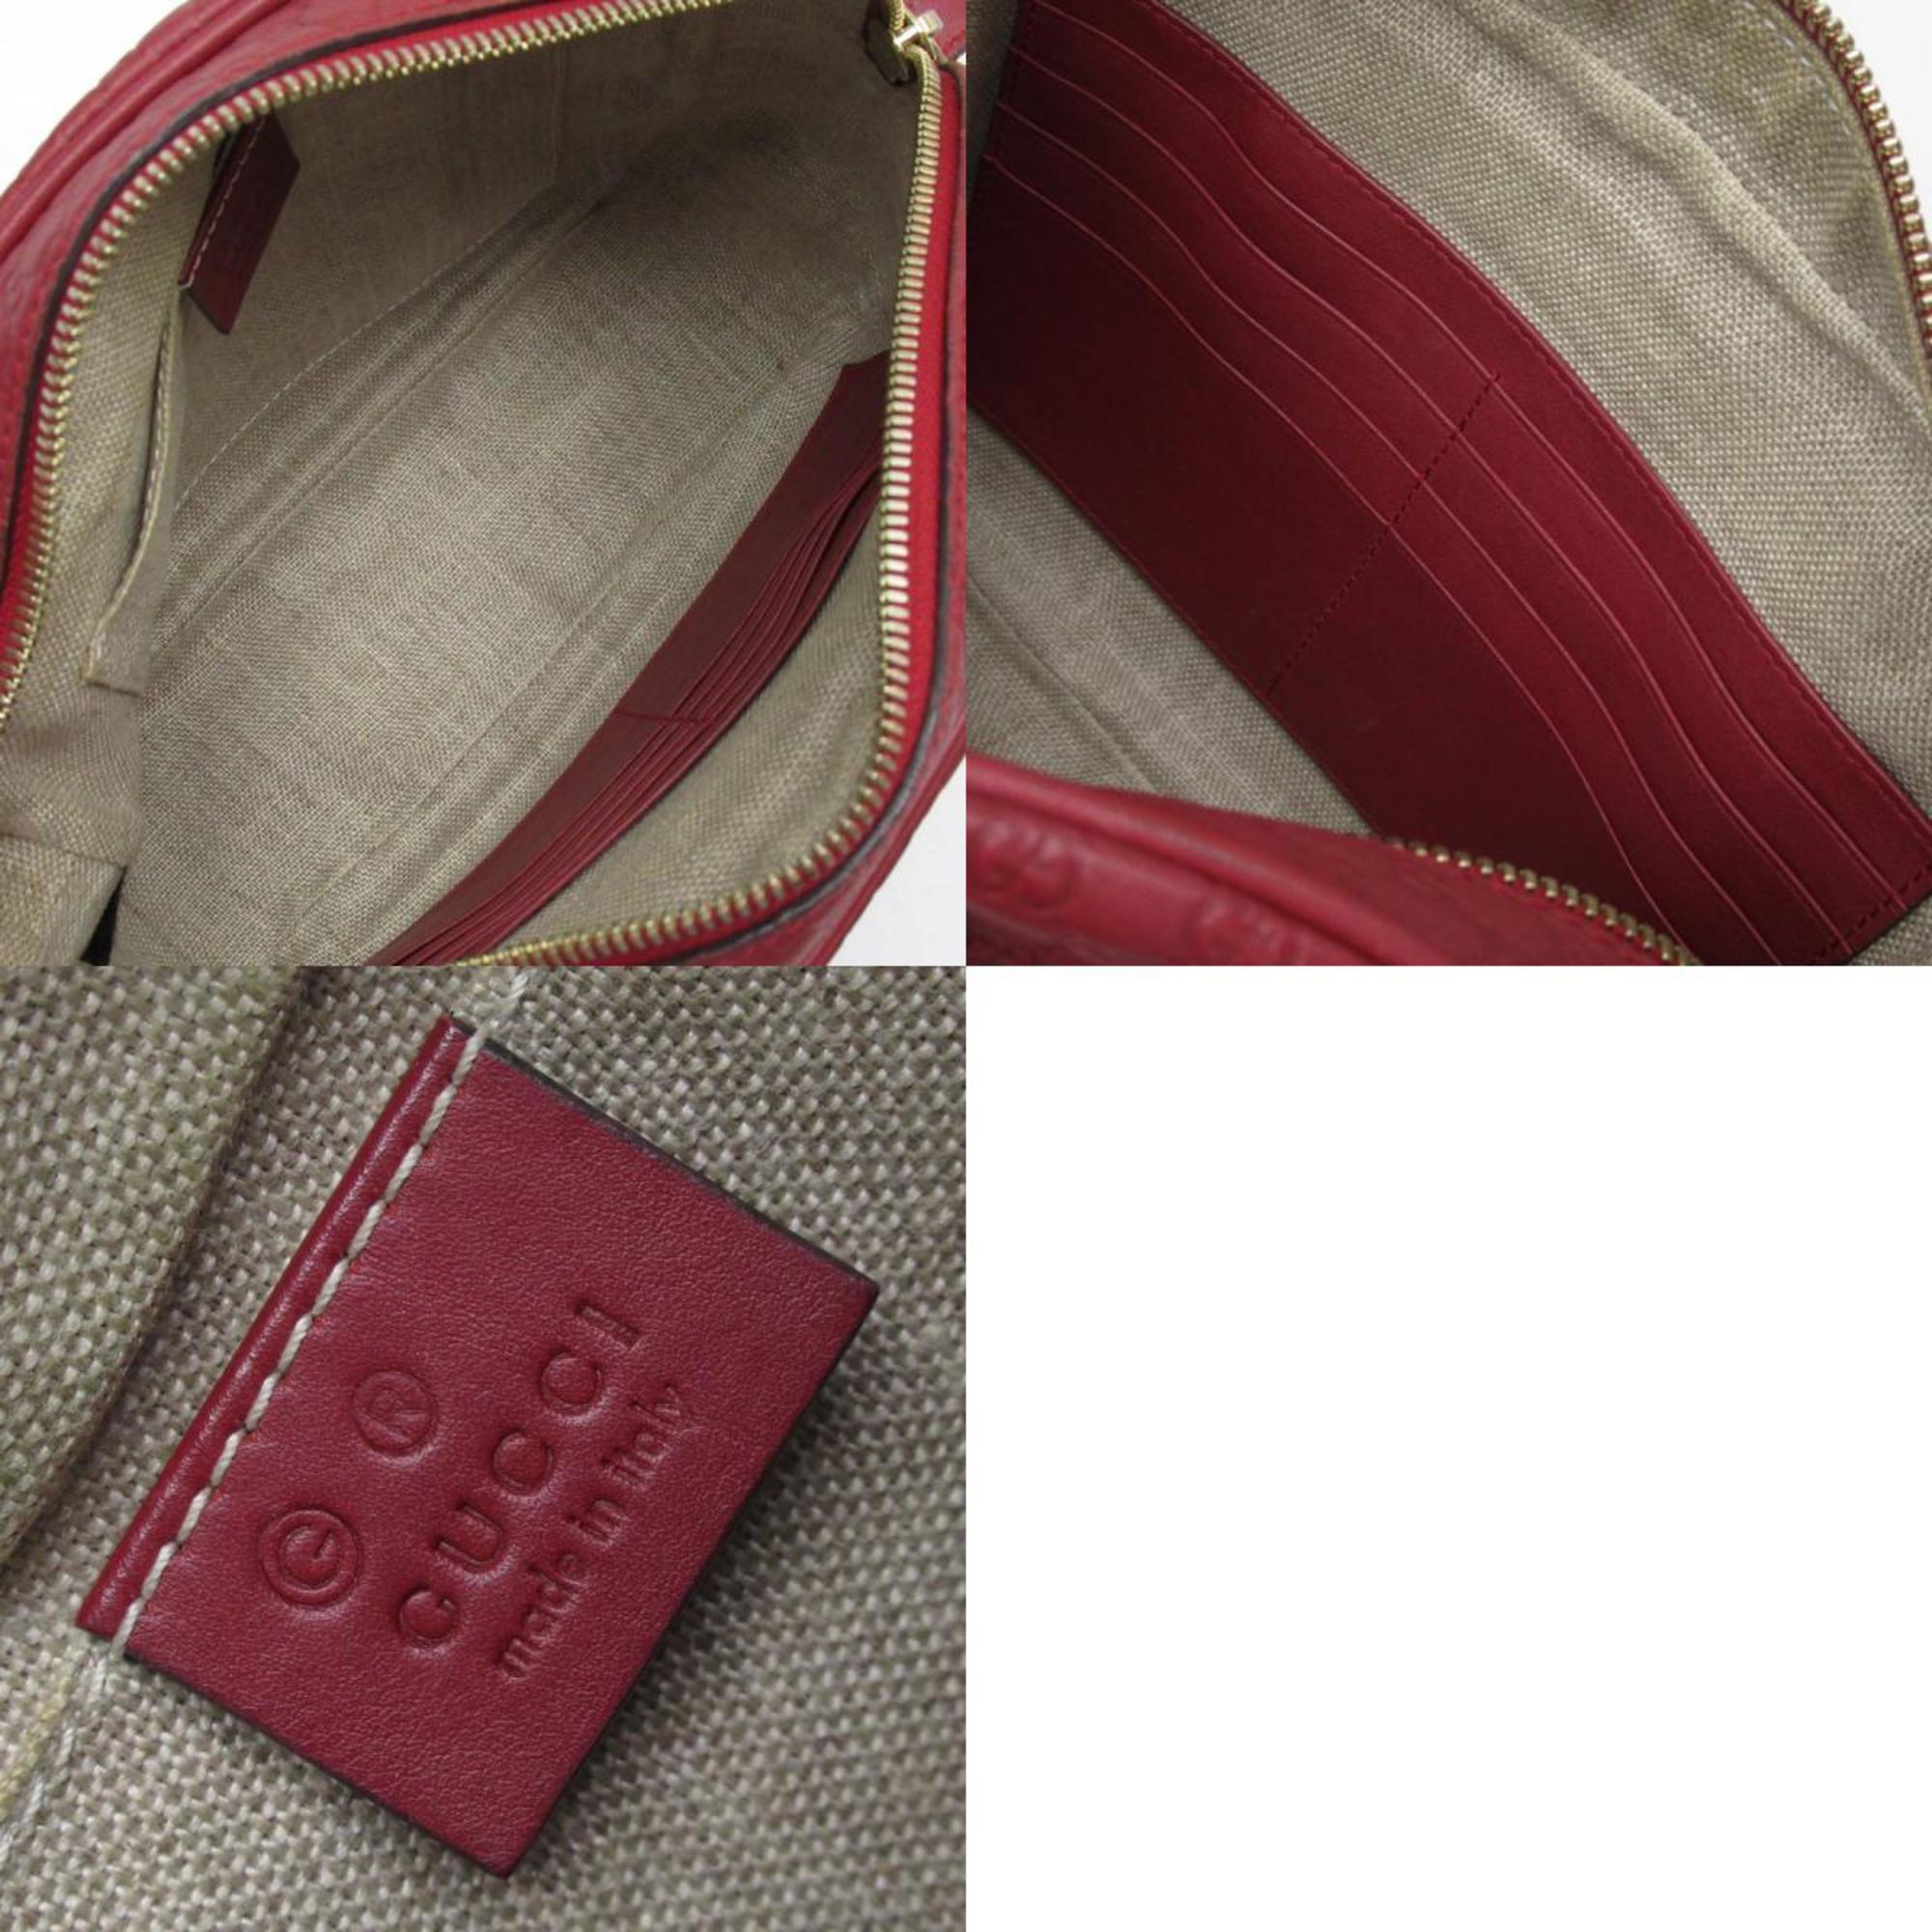 GUCCI shoulder bag micro Guccissima leather dark red women's 449413 w0389a